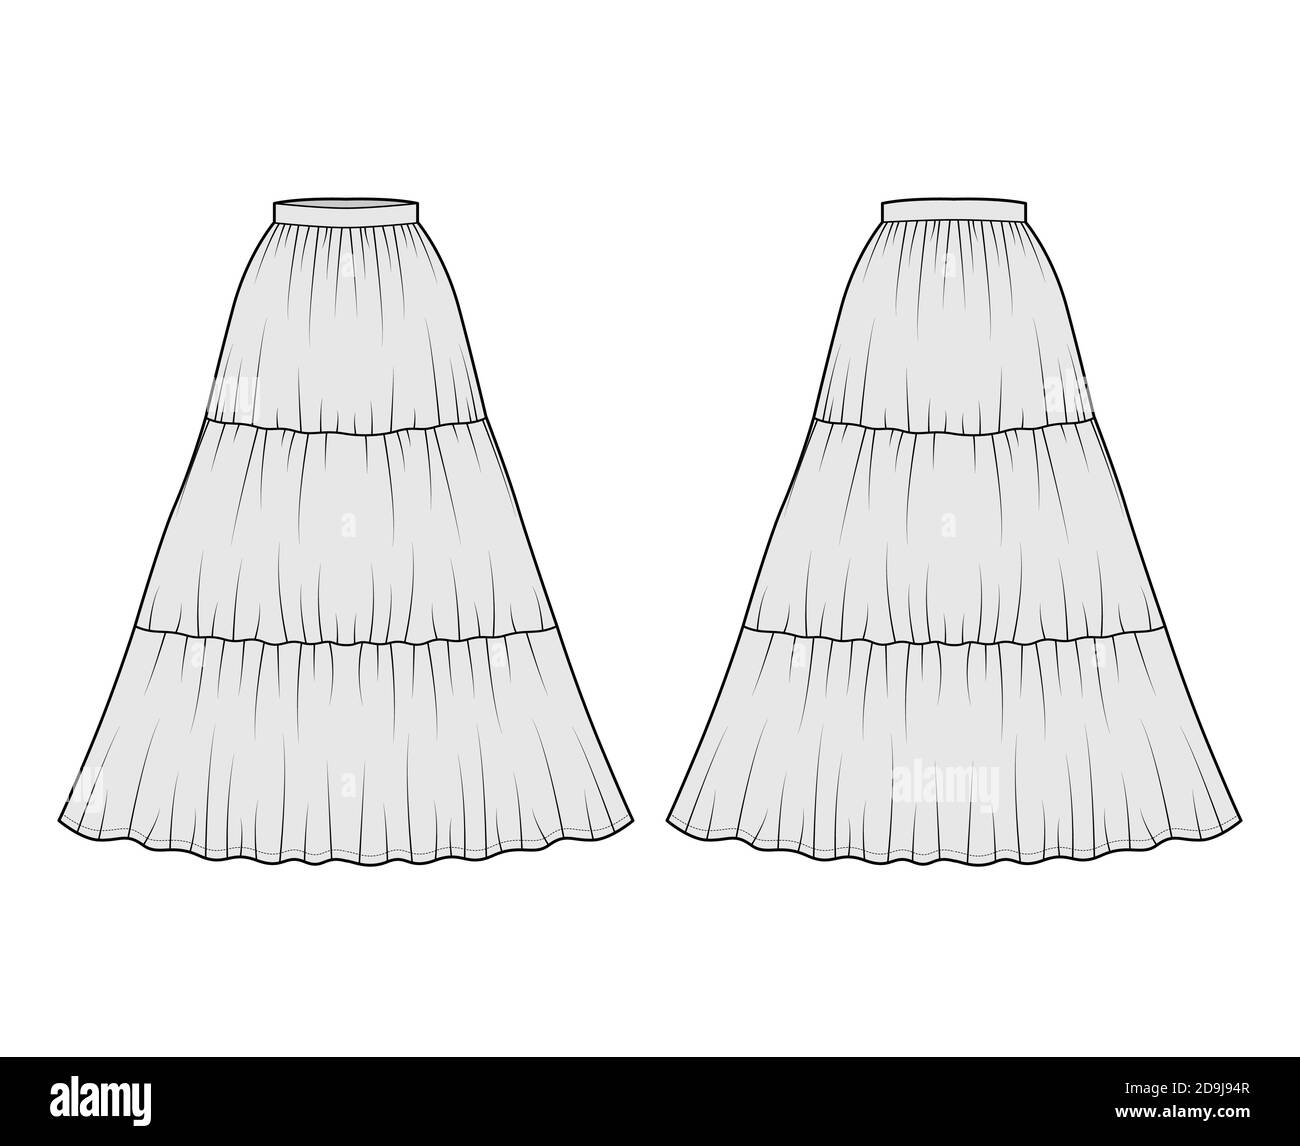 Jupe gitane dirndl technique mode illustration avec silhouette longue de plancher, plénitude circulaire. Modèle à fond plat à l'avant, à l'arrière, de couleur grise. Femmes, hommes, maquette de CAD unisex Illustration de Vecteur